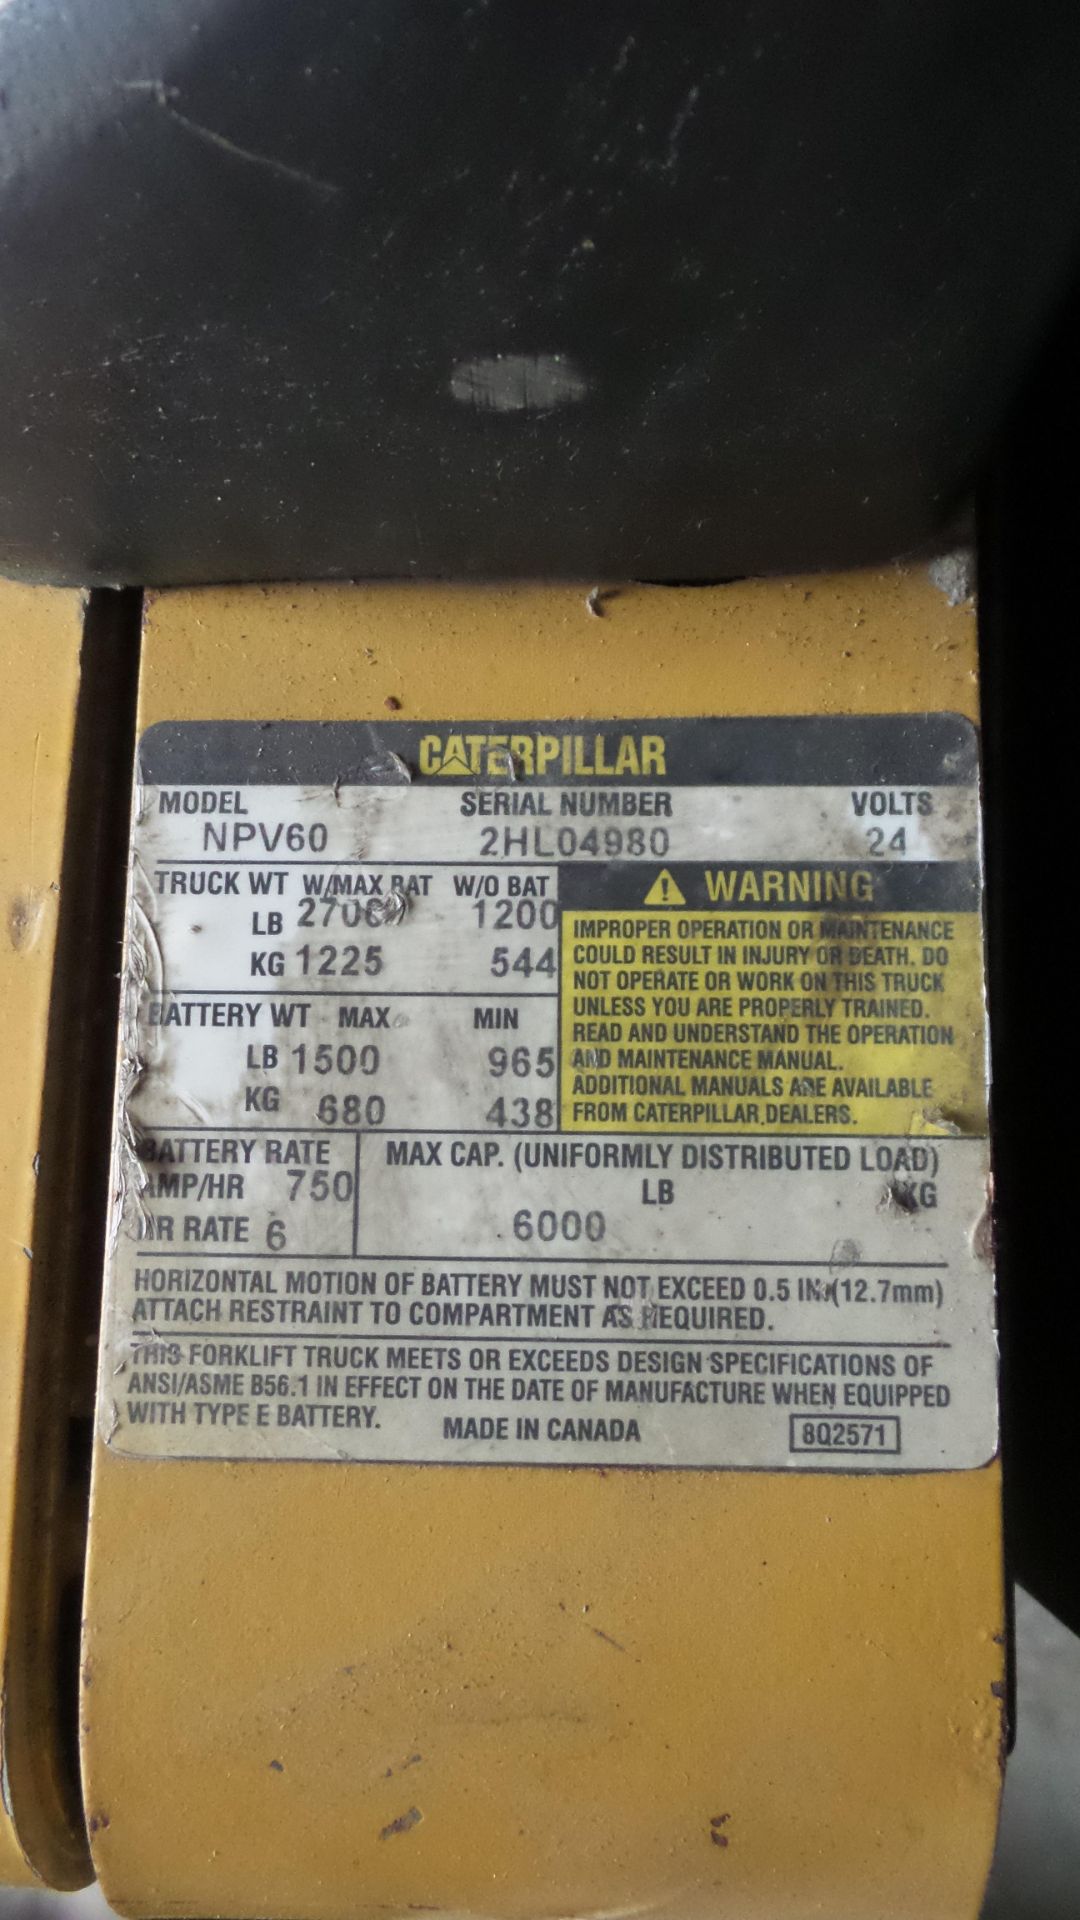 Caterpillar NPV60 Electric Pallet Jack 24V,2,700lb cap, 3,231hrs s/n: 2HL04980 - Image 2 of 2